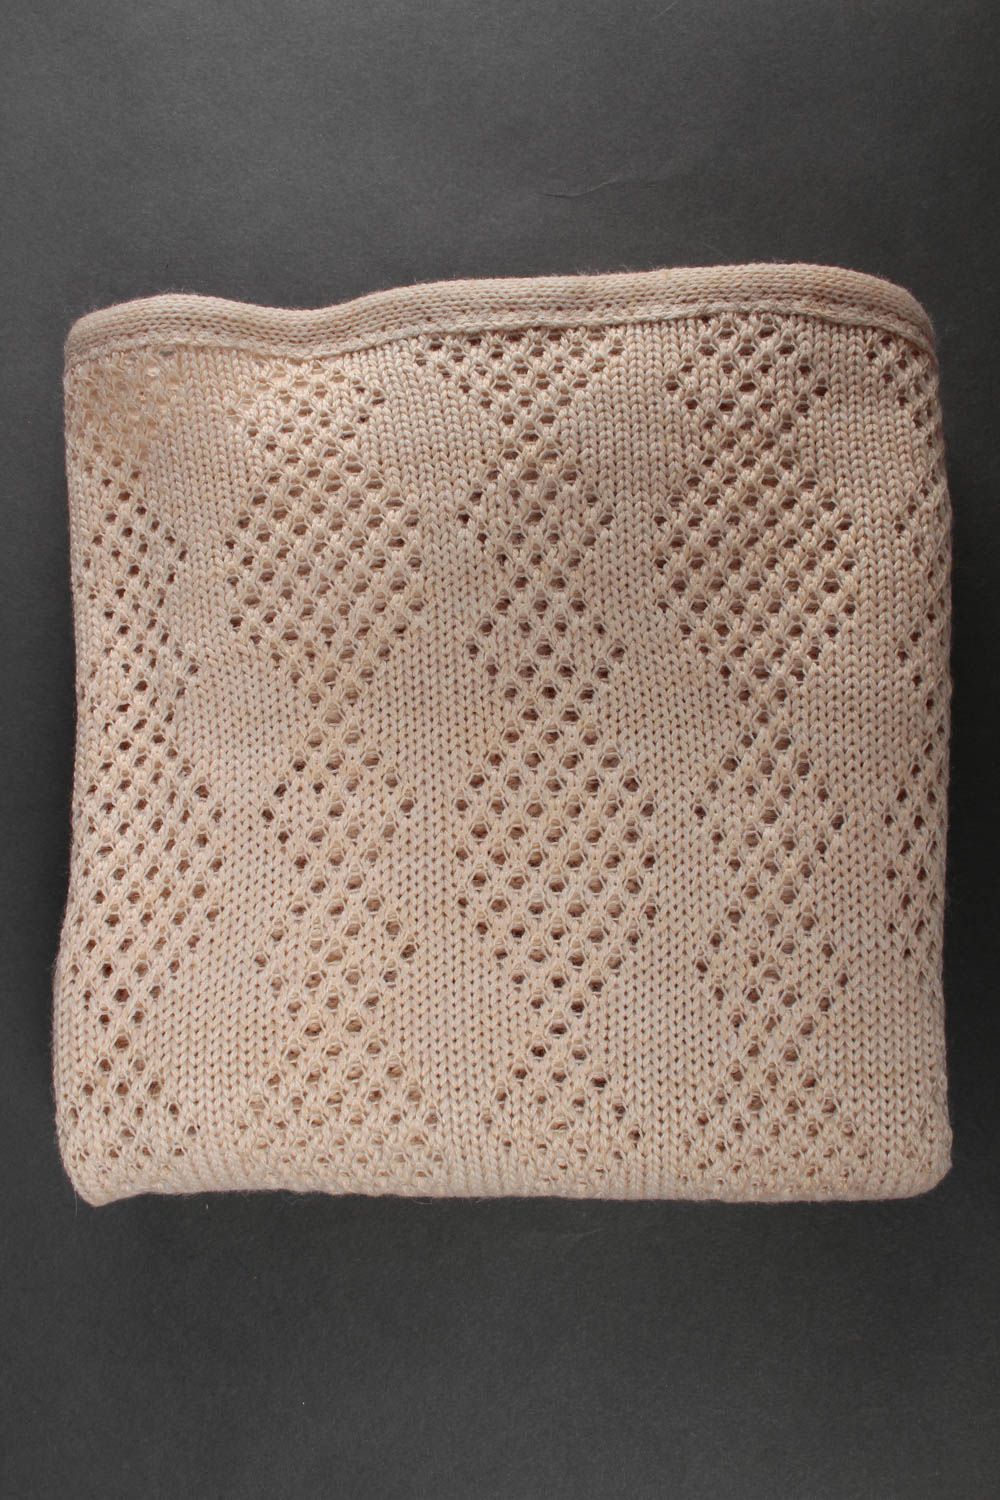 Handmade blanket baby blanket knitted blanket crocheted blanket gift ideas photo 4